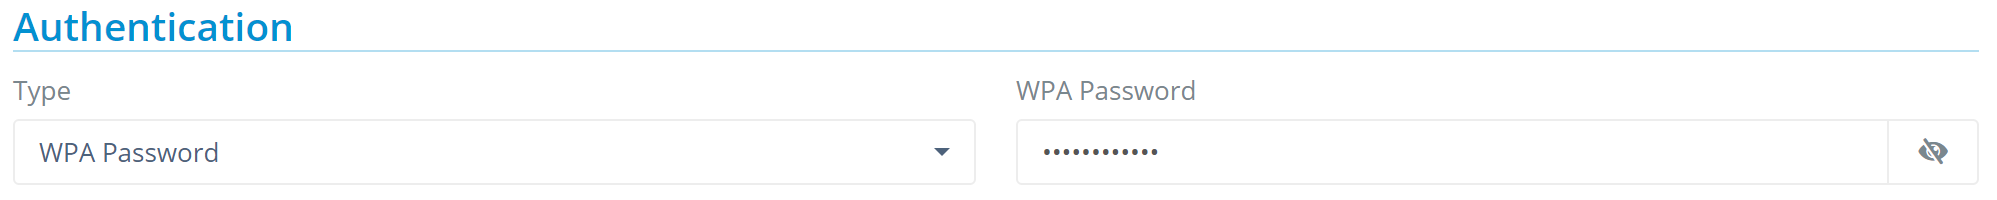 wpa-pass-setup.PNG